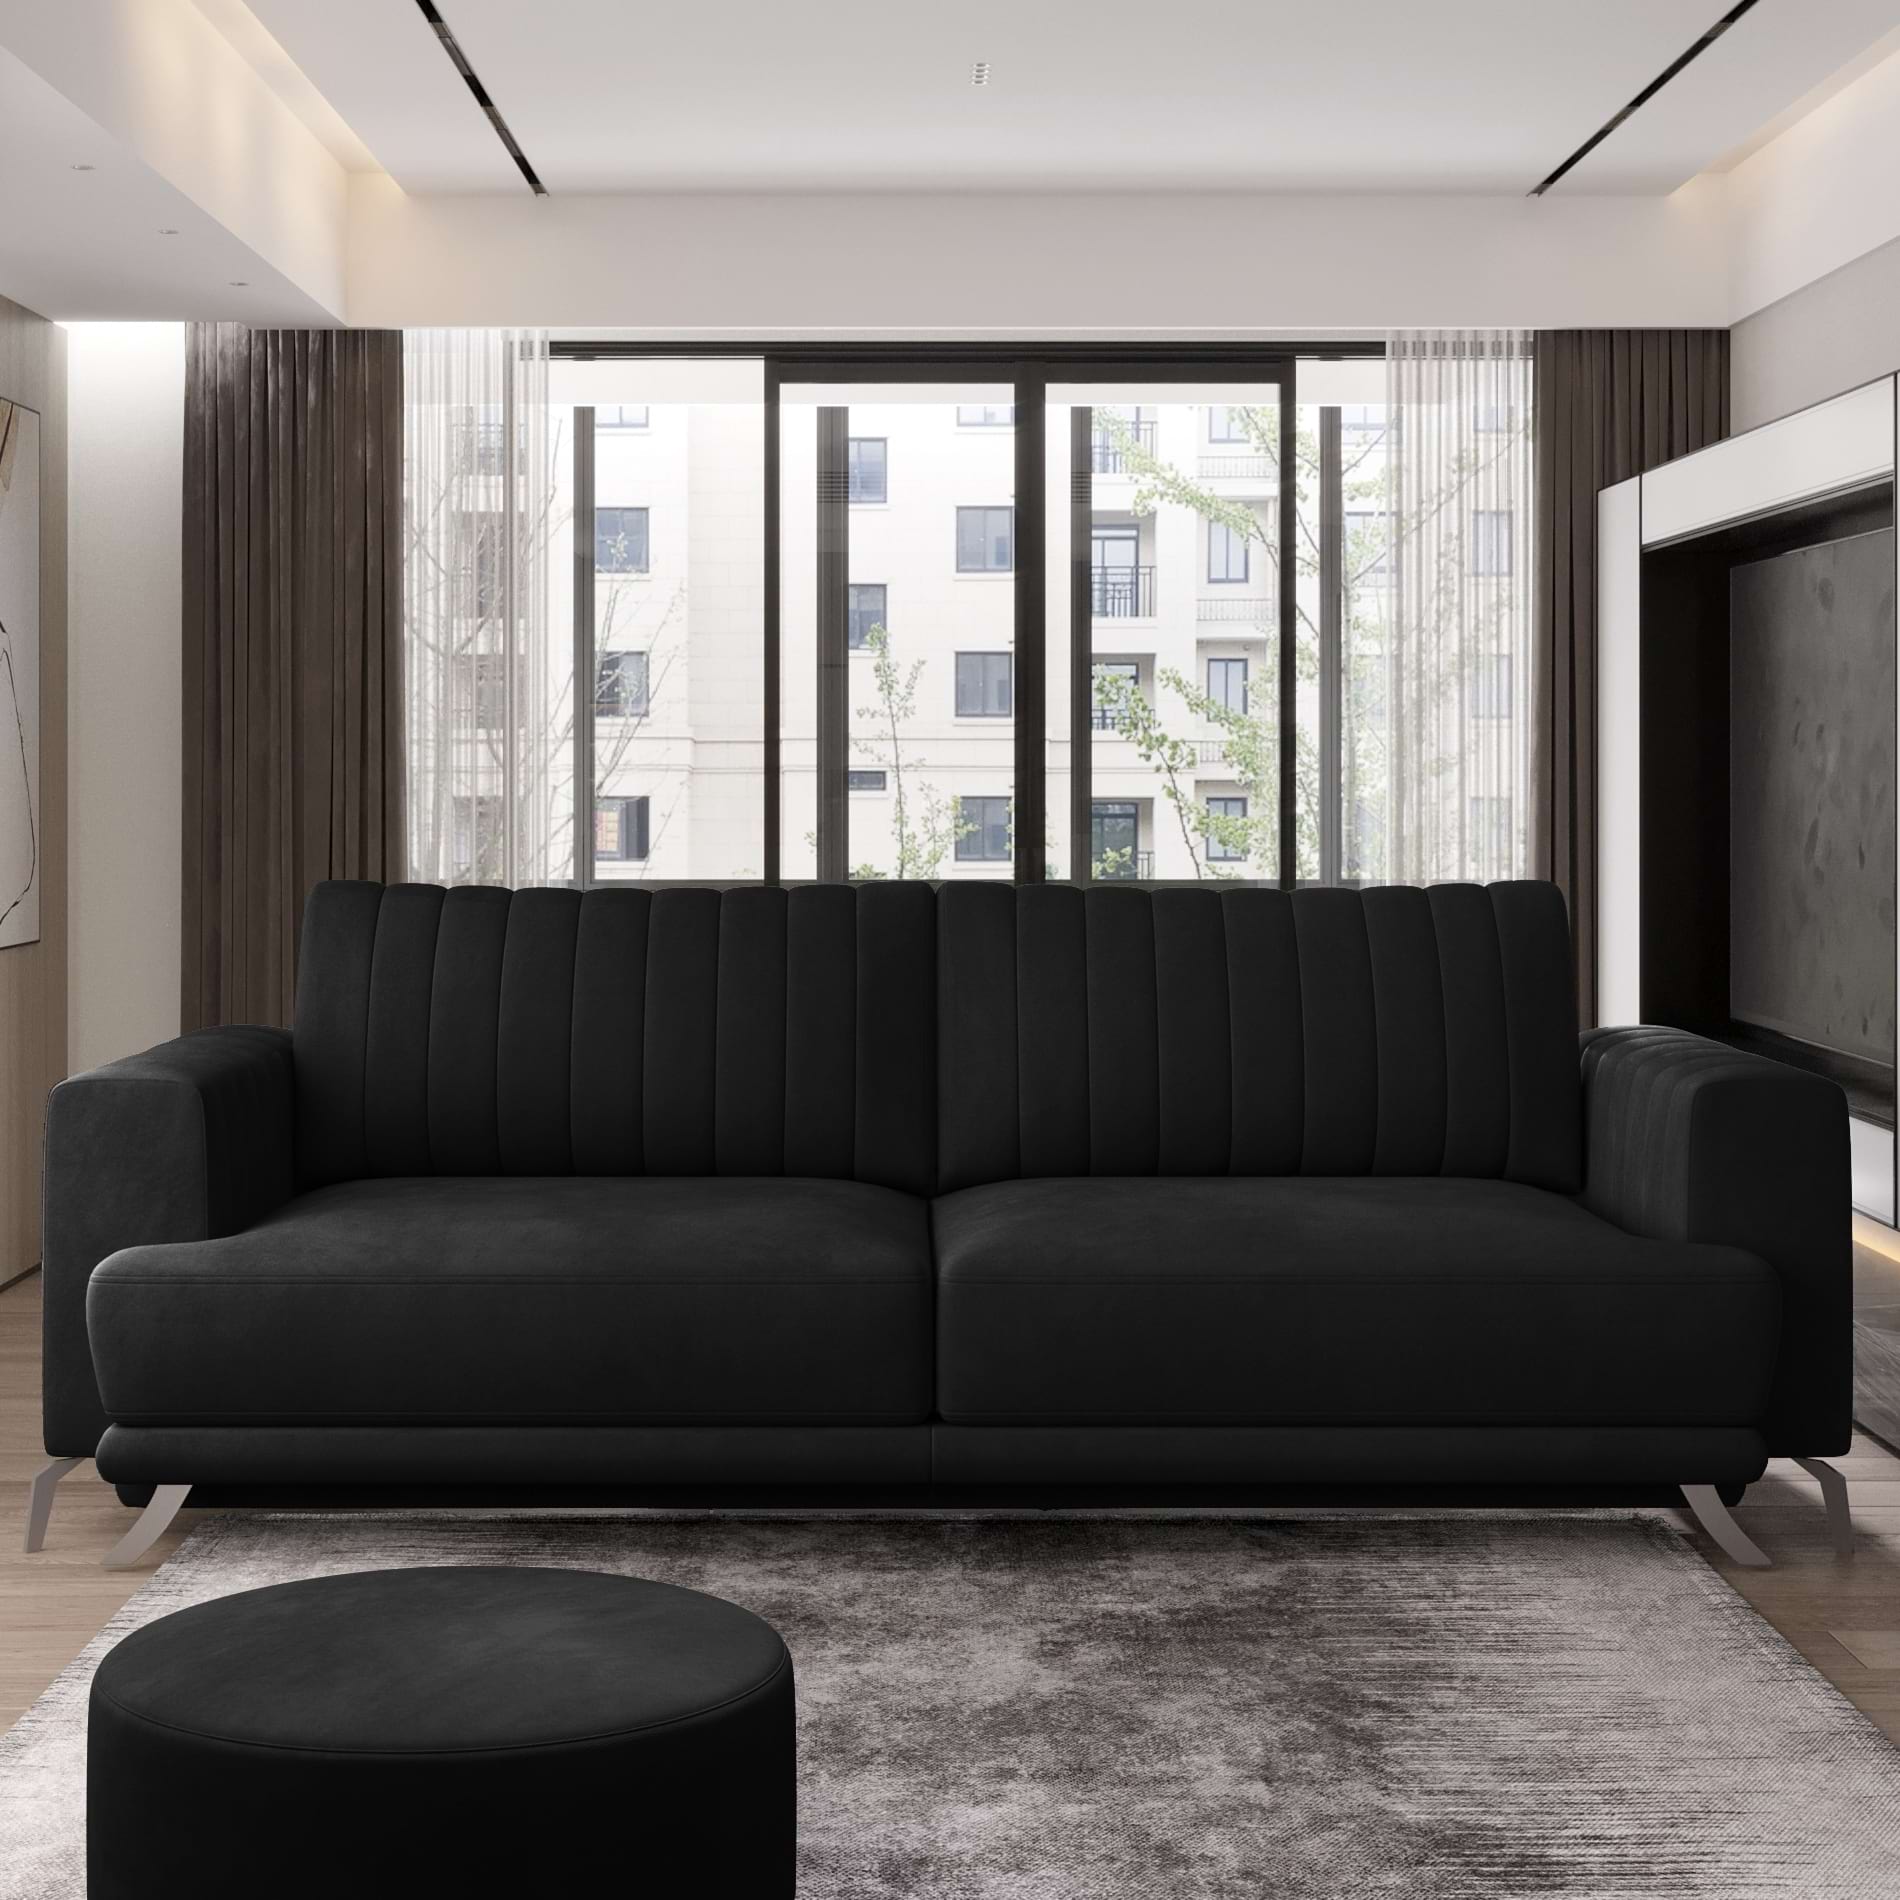 A fekete szín a lakberendezésben - fekete kanapék